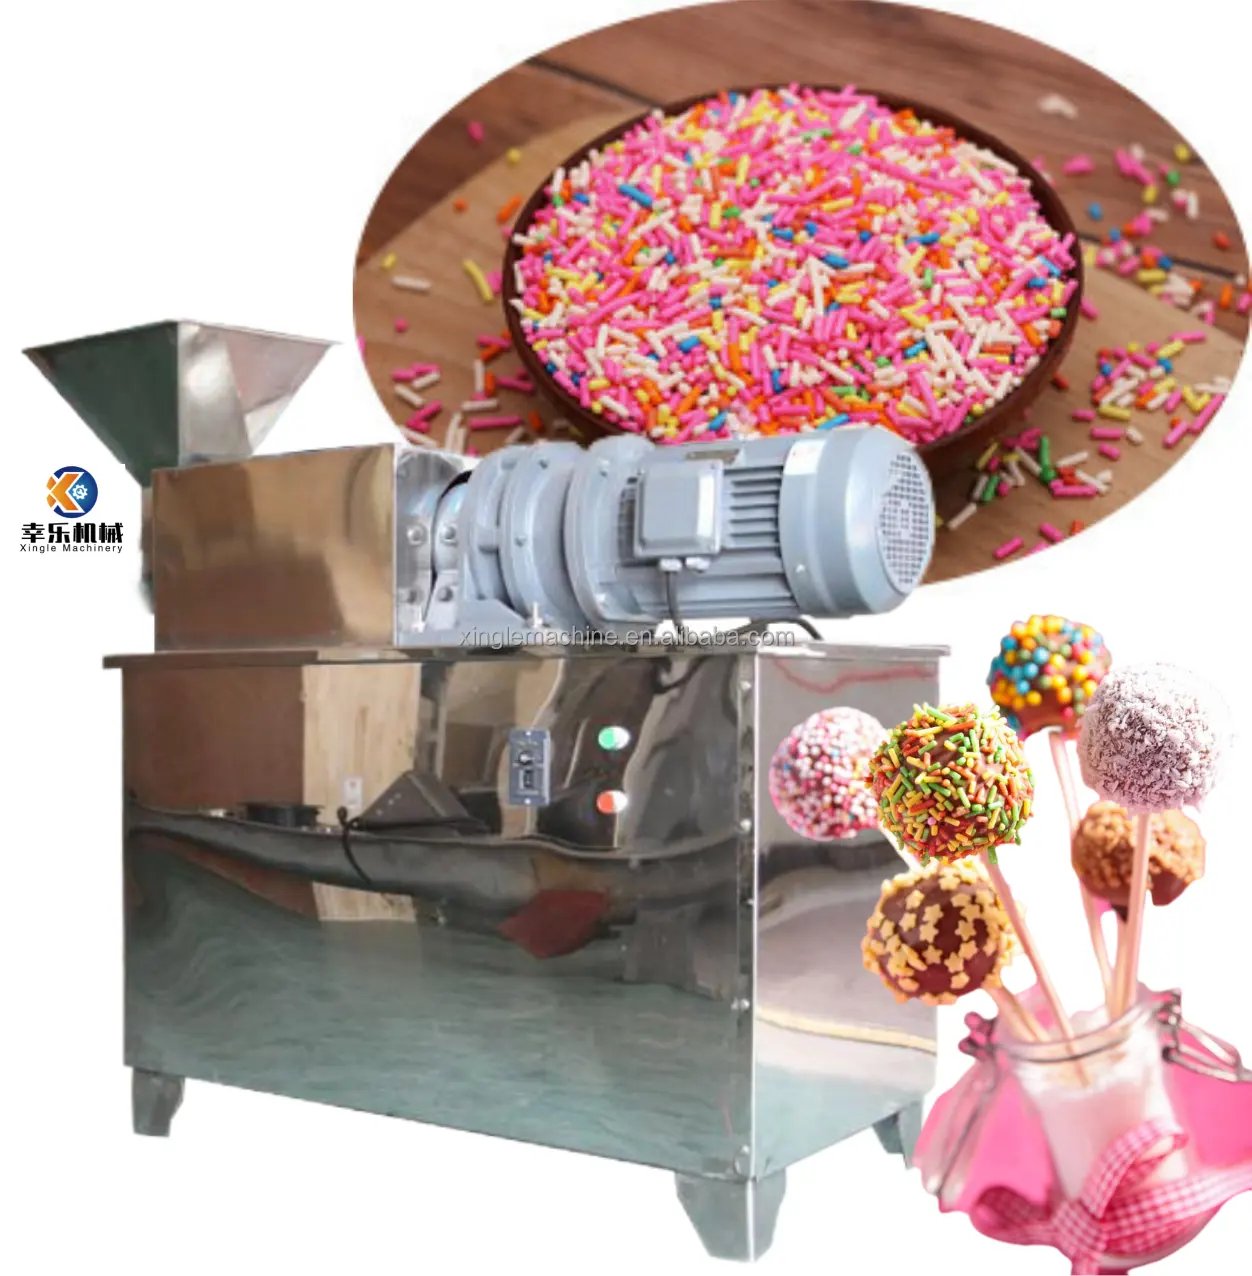 Auto Vermi celli Extruder Kuchen Dekoration Regenbogen essbare freie Zucker Konfetti Süßigkeiten Herstellung Maschine Perle Zucker Streu sel Extruder